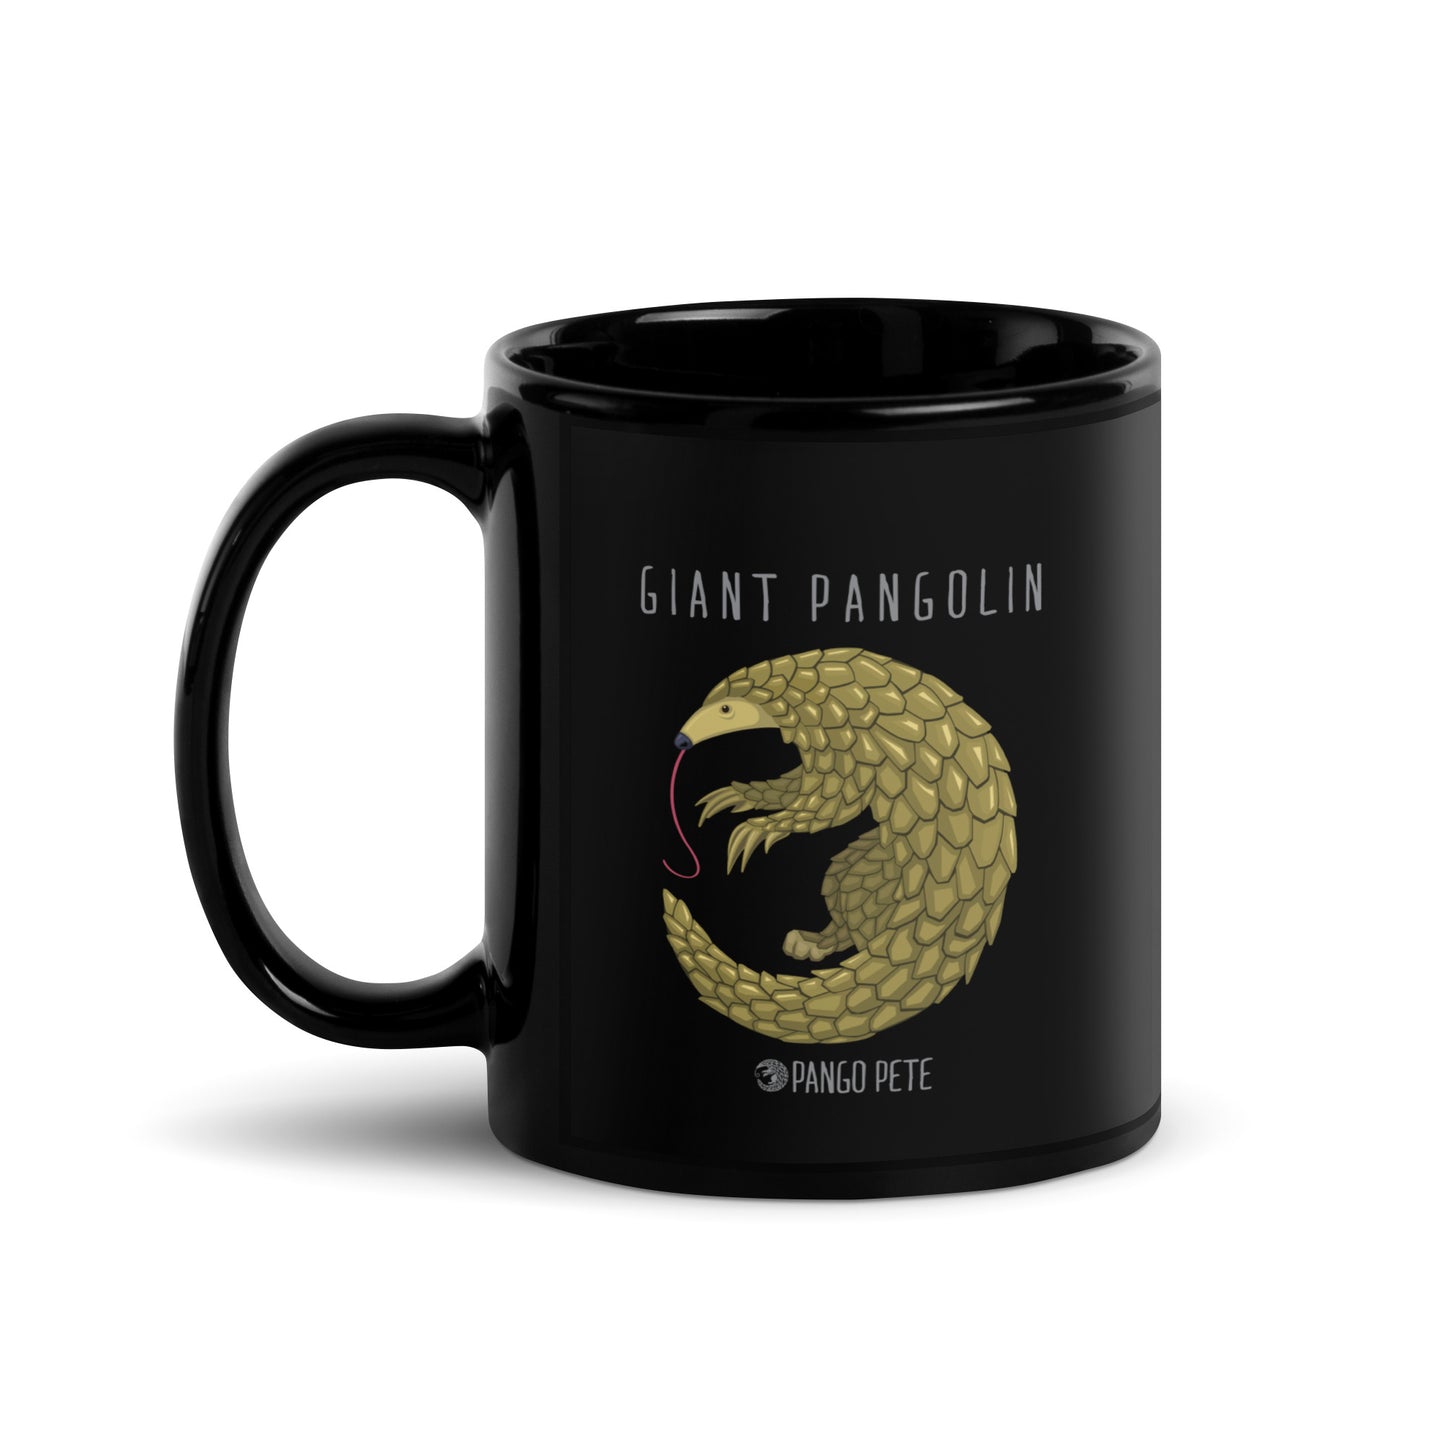 Giant Pangolin Mug — Black, 11 oz.